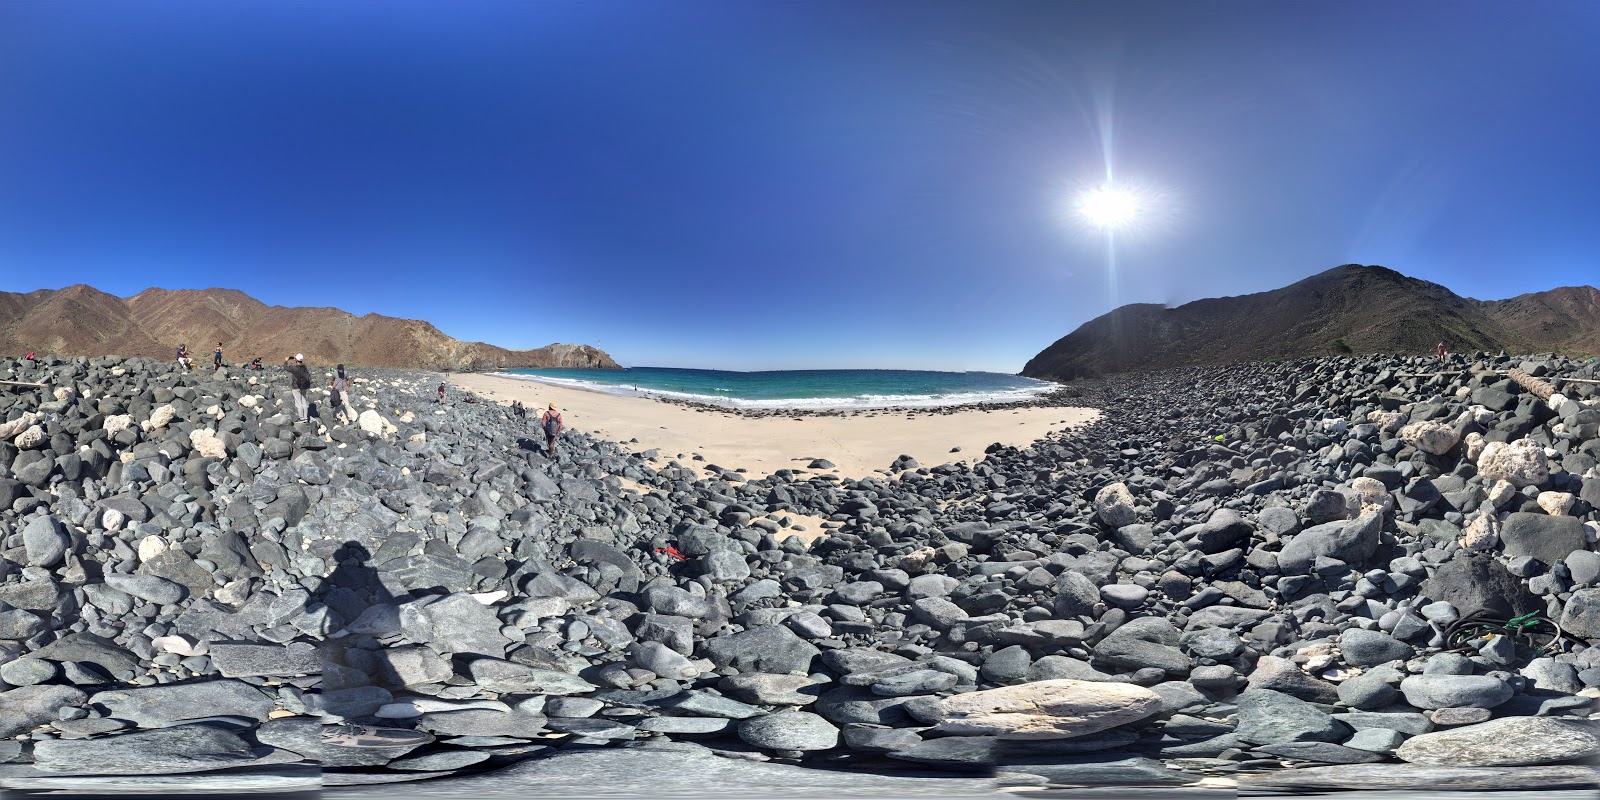 Foto von AlQalqali beach befindet sich in natürlicher umgebung